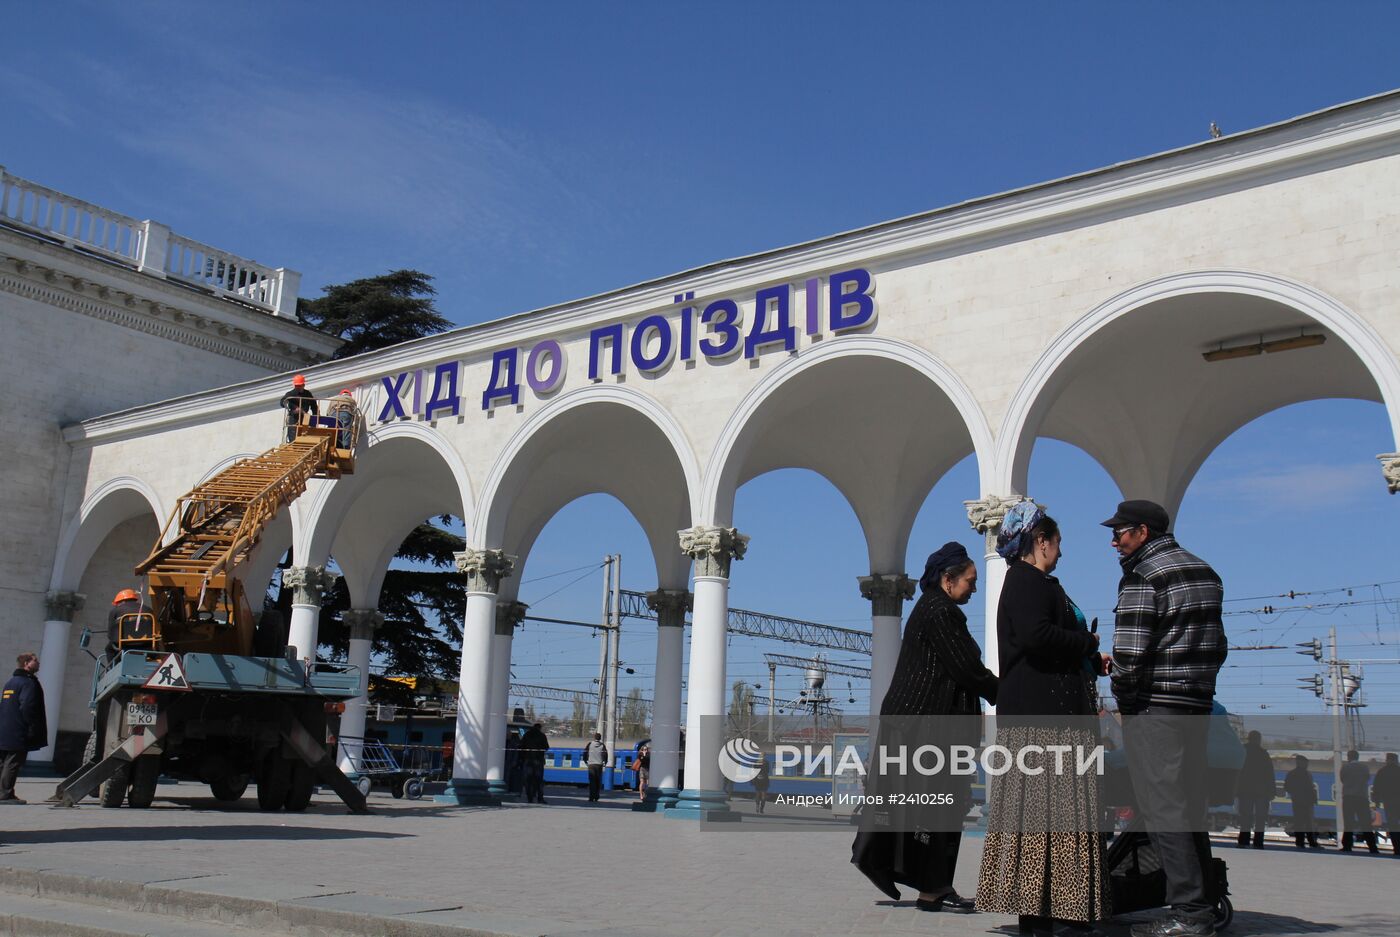 Демонтаж вывесок на украинском языке на железнодорожном вокзале в Симферополе